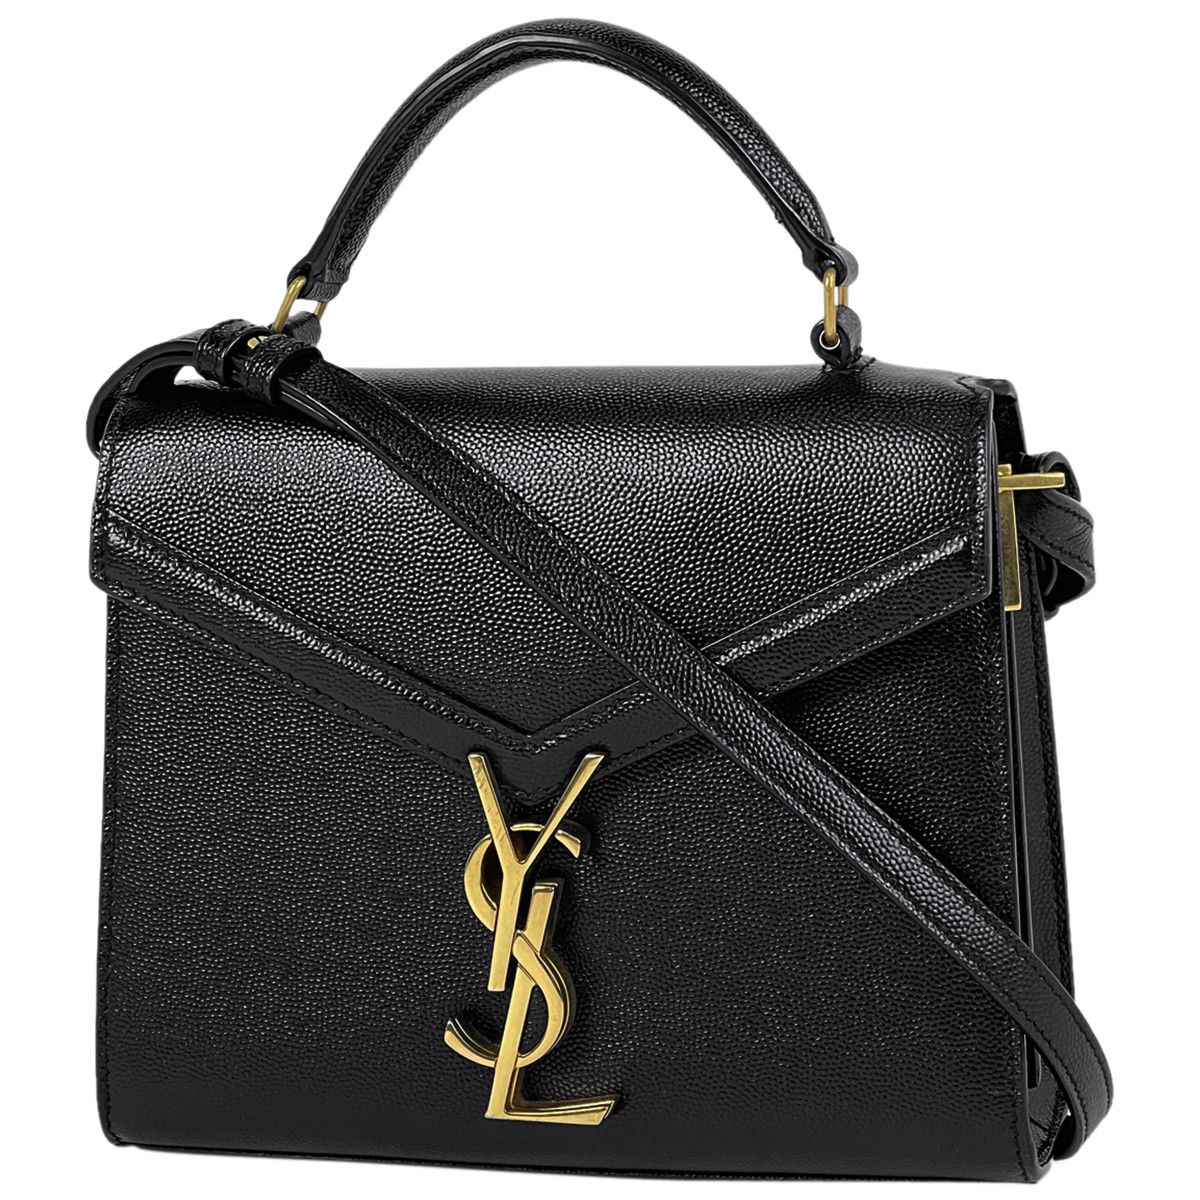 Yves Saint Laurent Saint Laurent Mini Handle Bag Leather Black Size ONE SIZE - 1 Preview